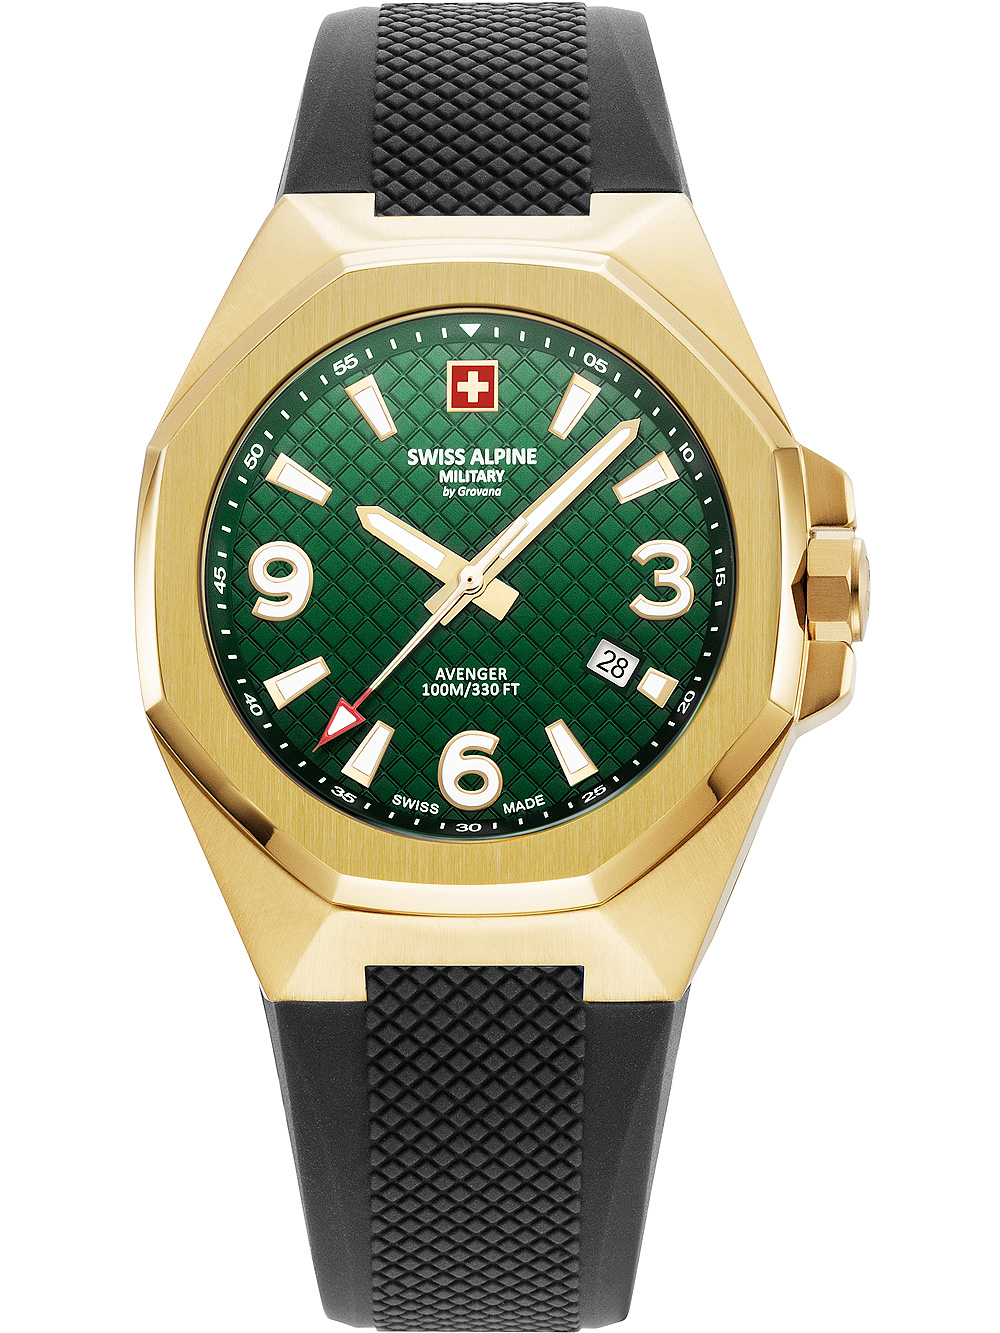 Pánské hodinky Swiss Alpine Military 7005.1814 Avenger